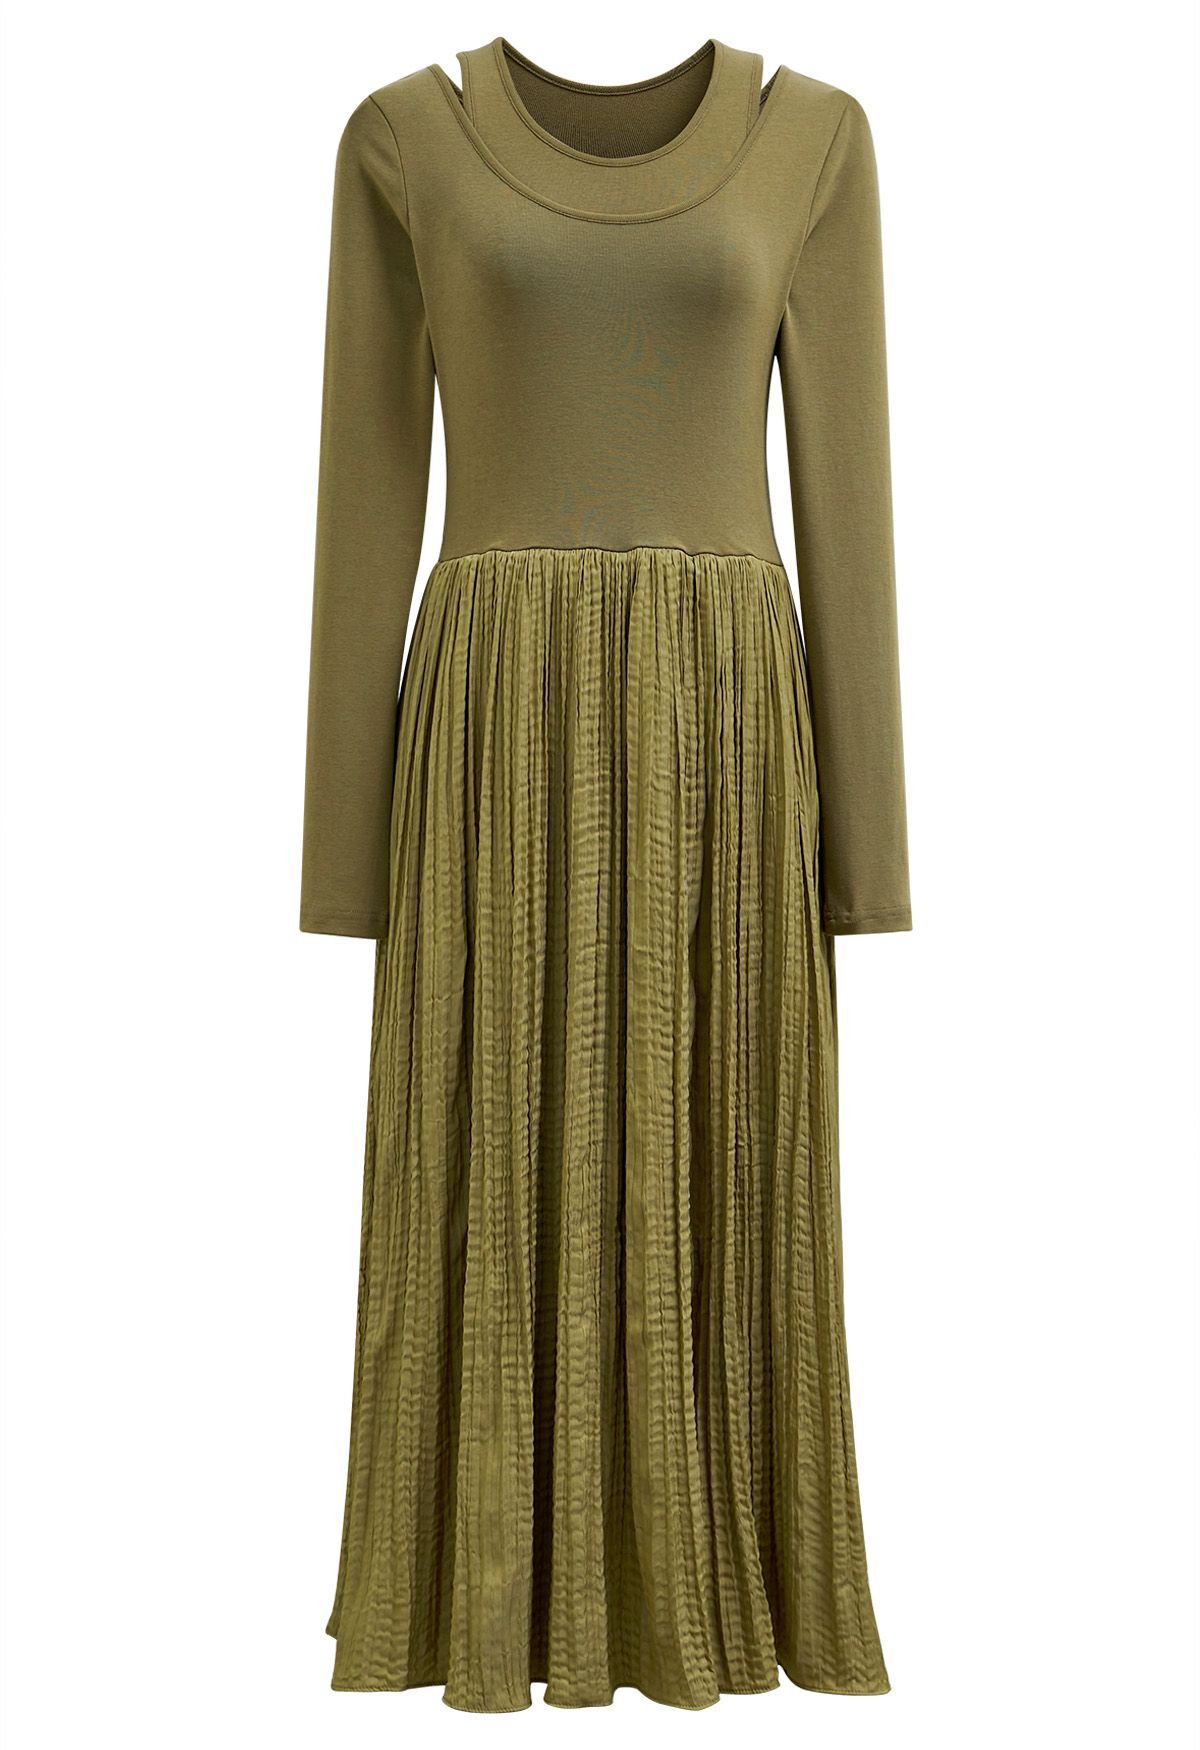 فستان متوسط الطول مقسم من قطعتين باللون الأخضر الطحلب